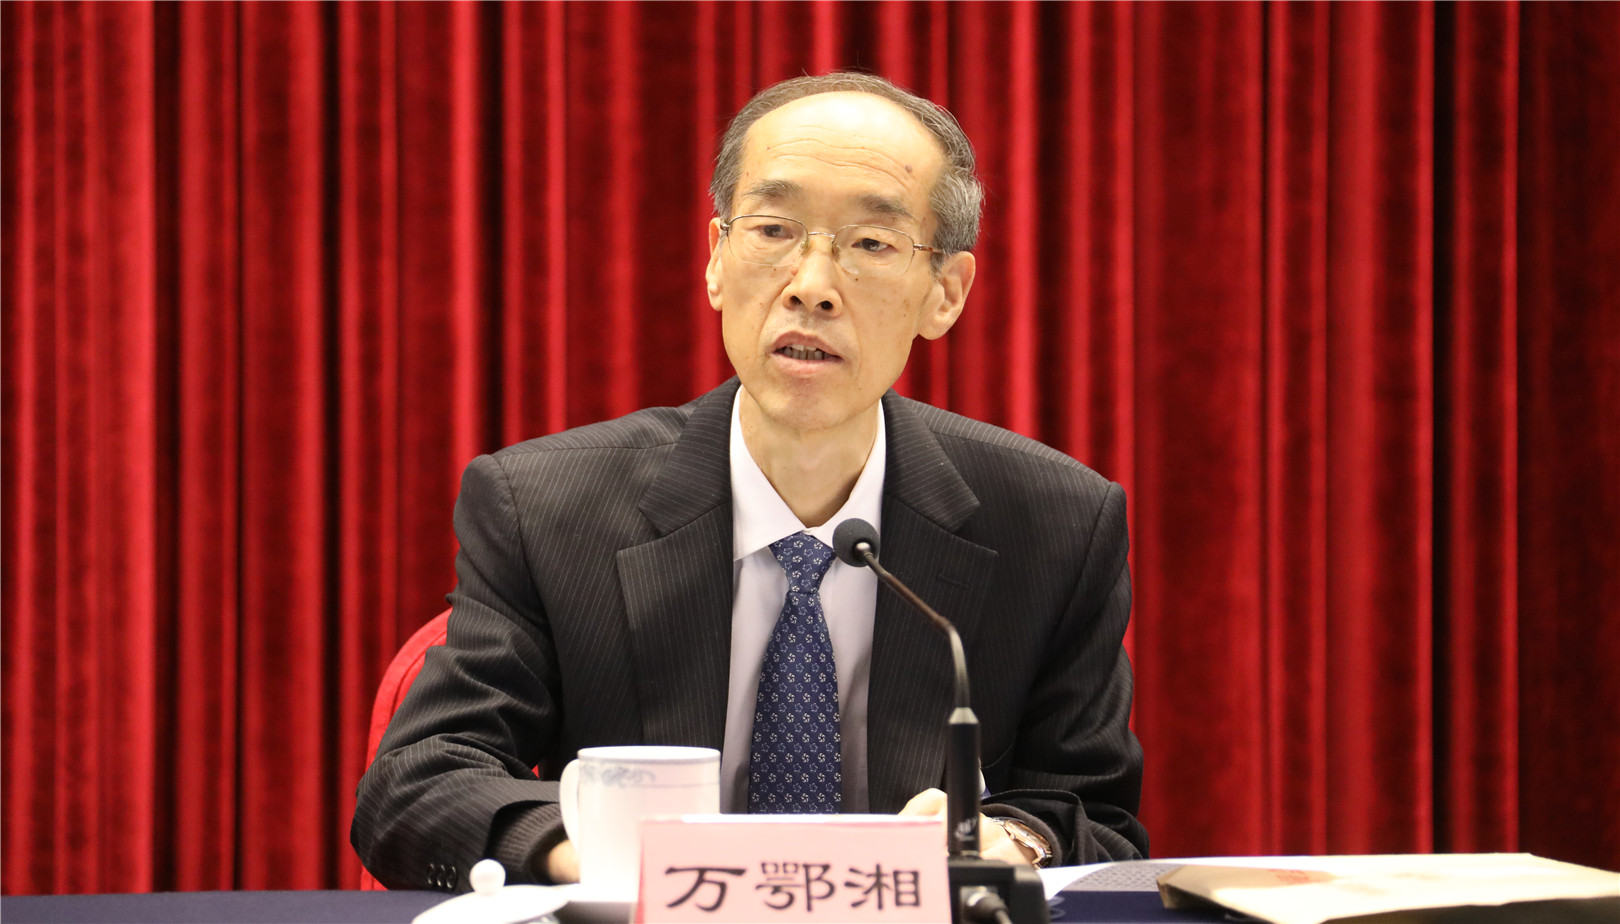 萬鄂湘代表第十三屆中央常務委員會作工作報告